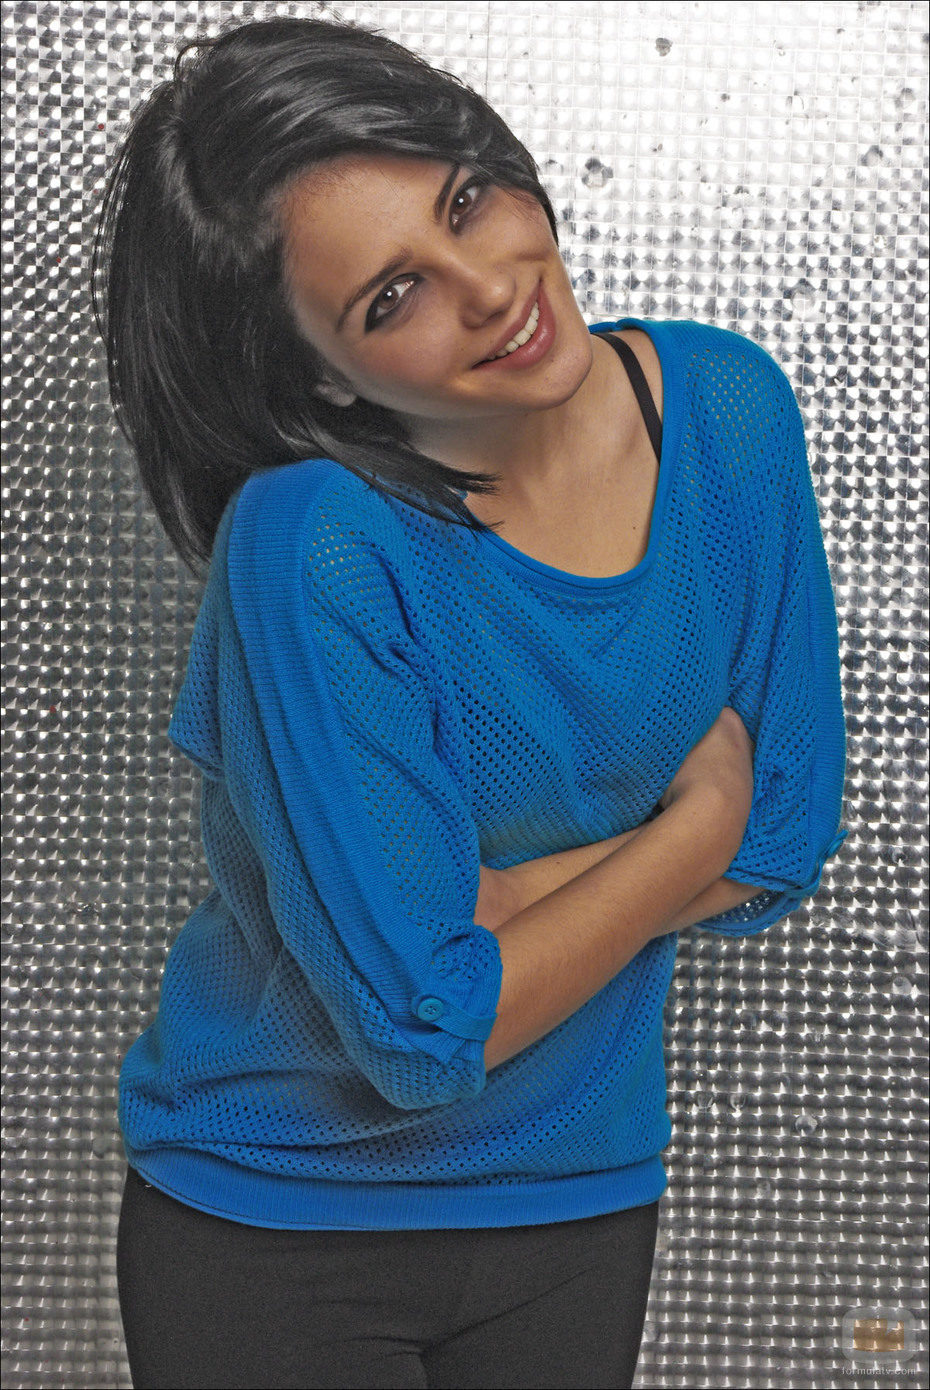 La actriz Andrea Duro en una sesión de fotos para Overlay Magazine